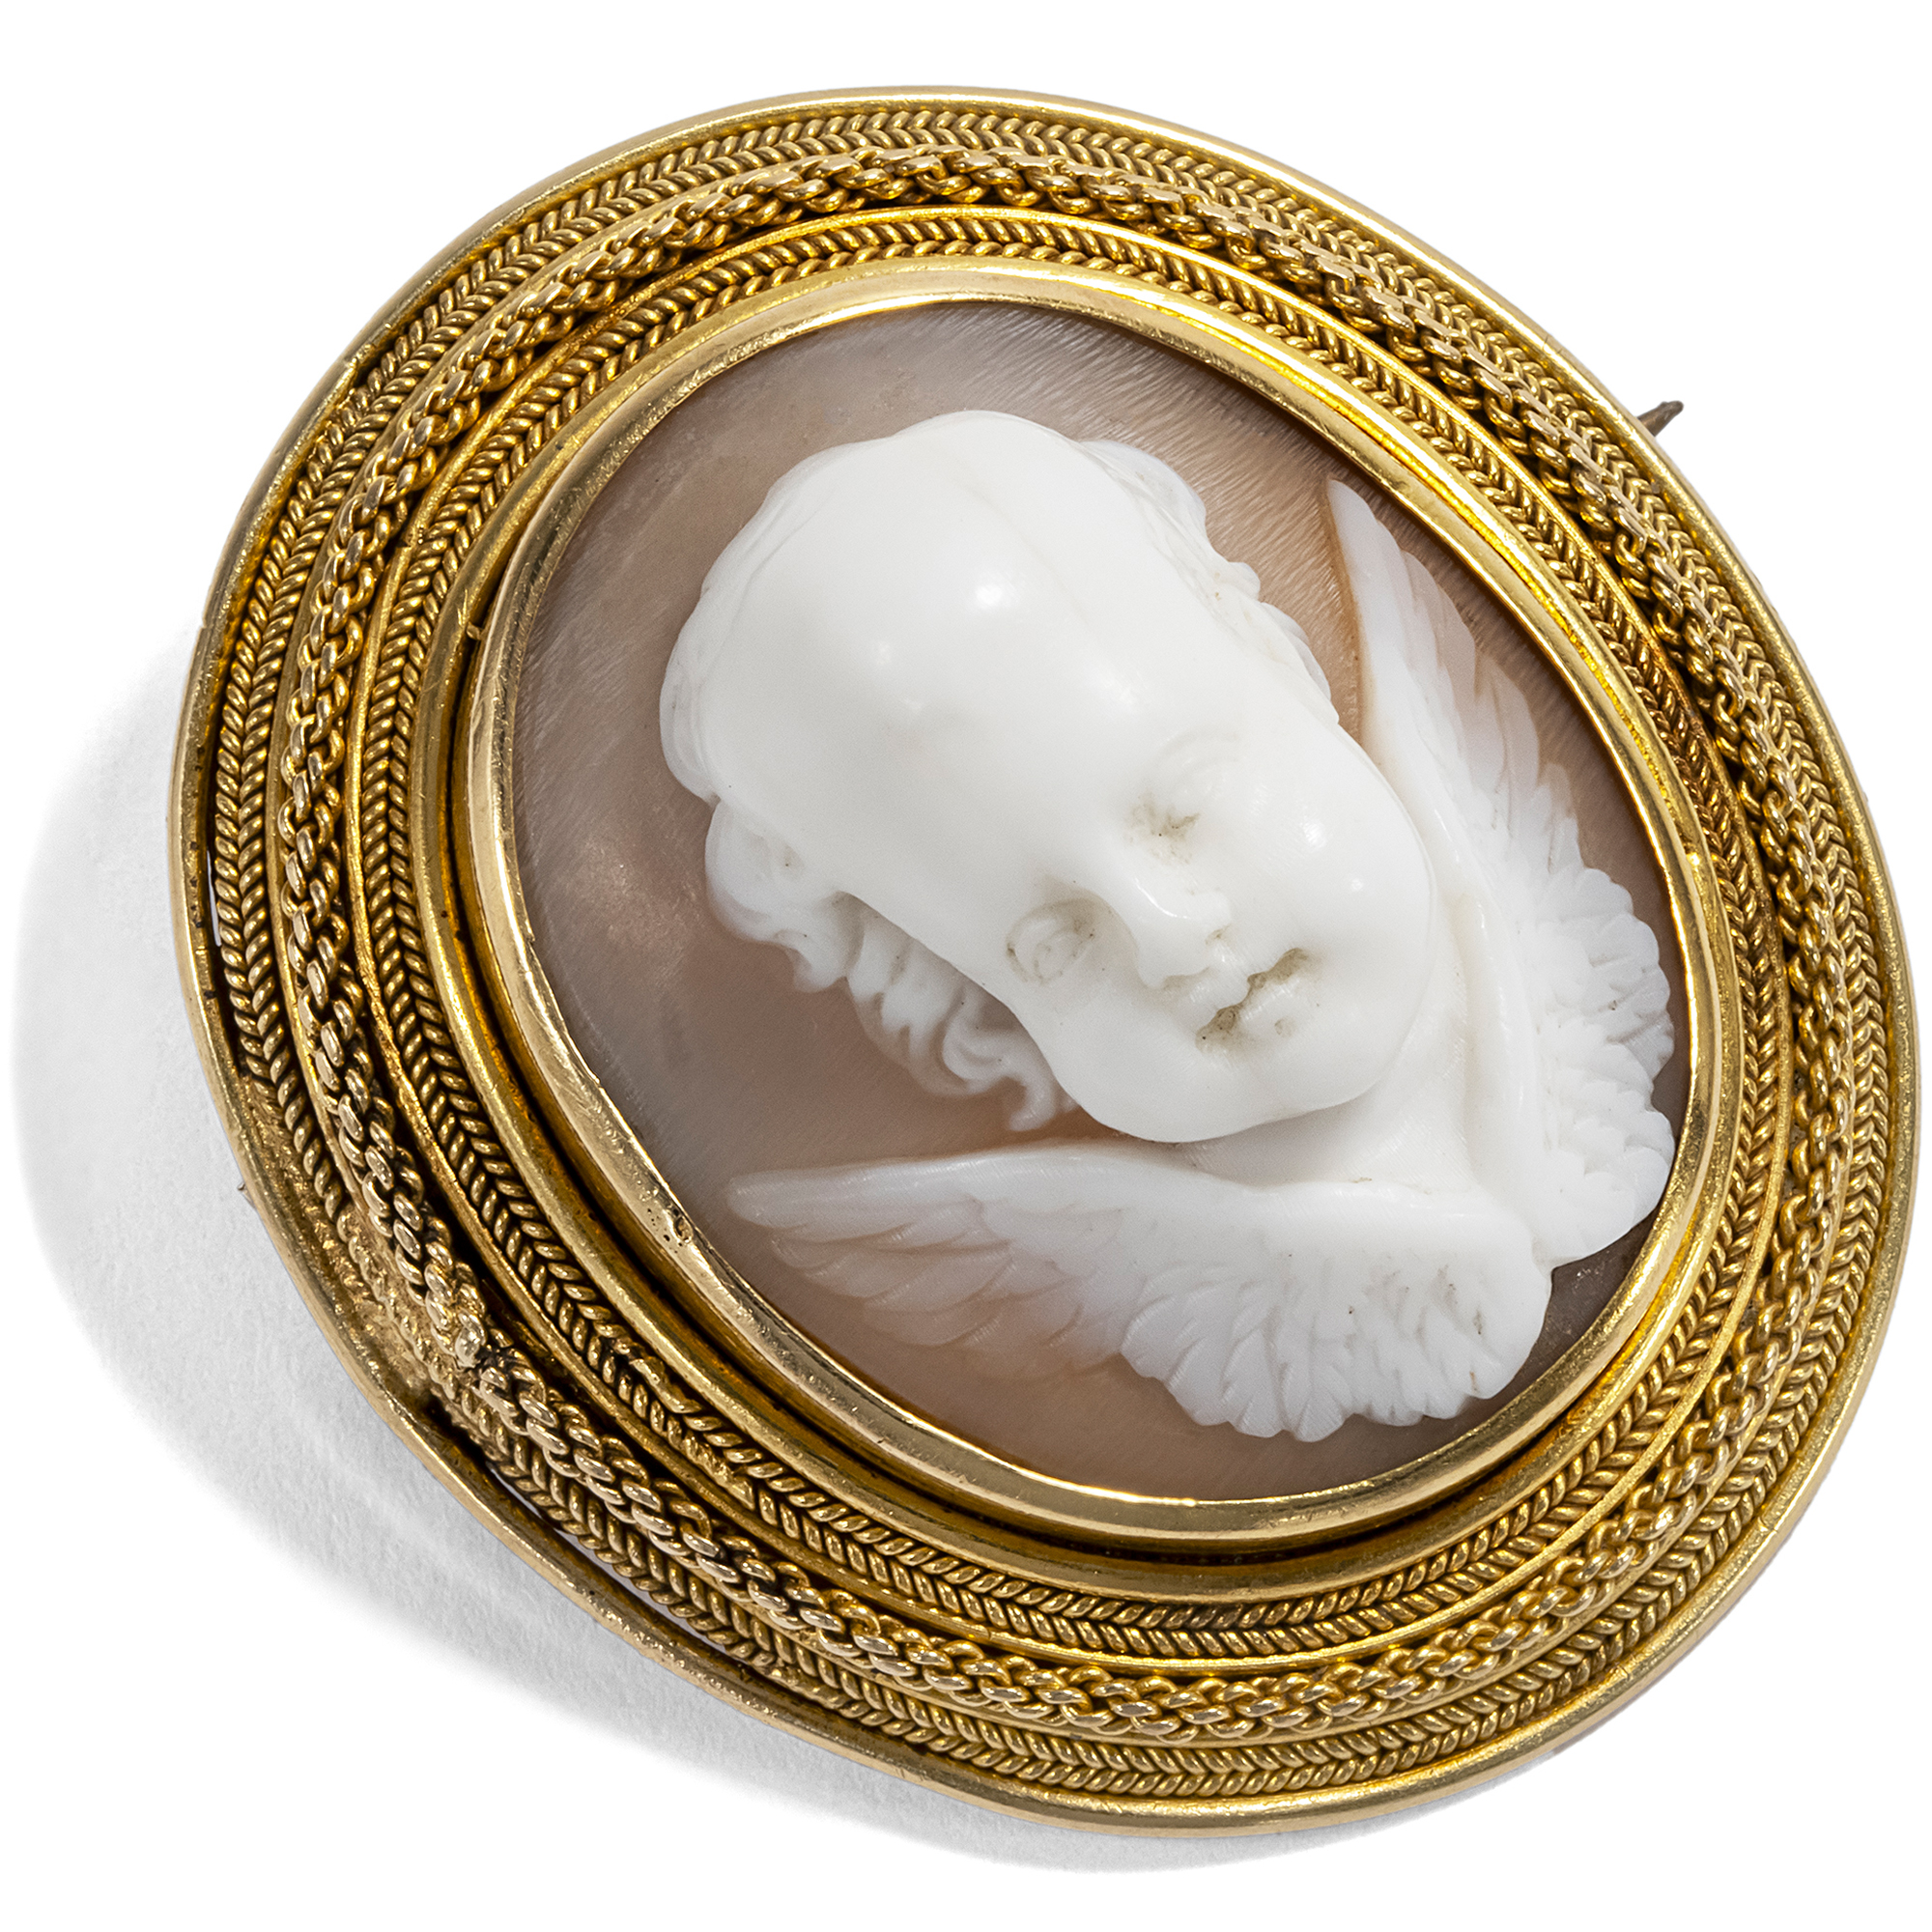 Erstklassige Goldbrosche mit plastischer Muschelgemme, Italien um 1870